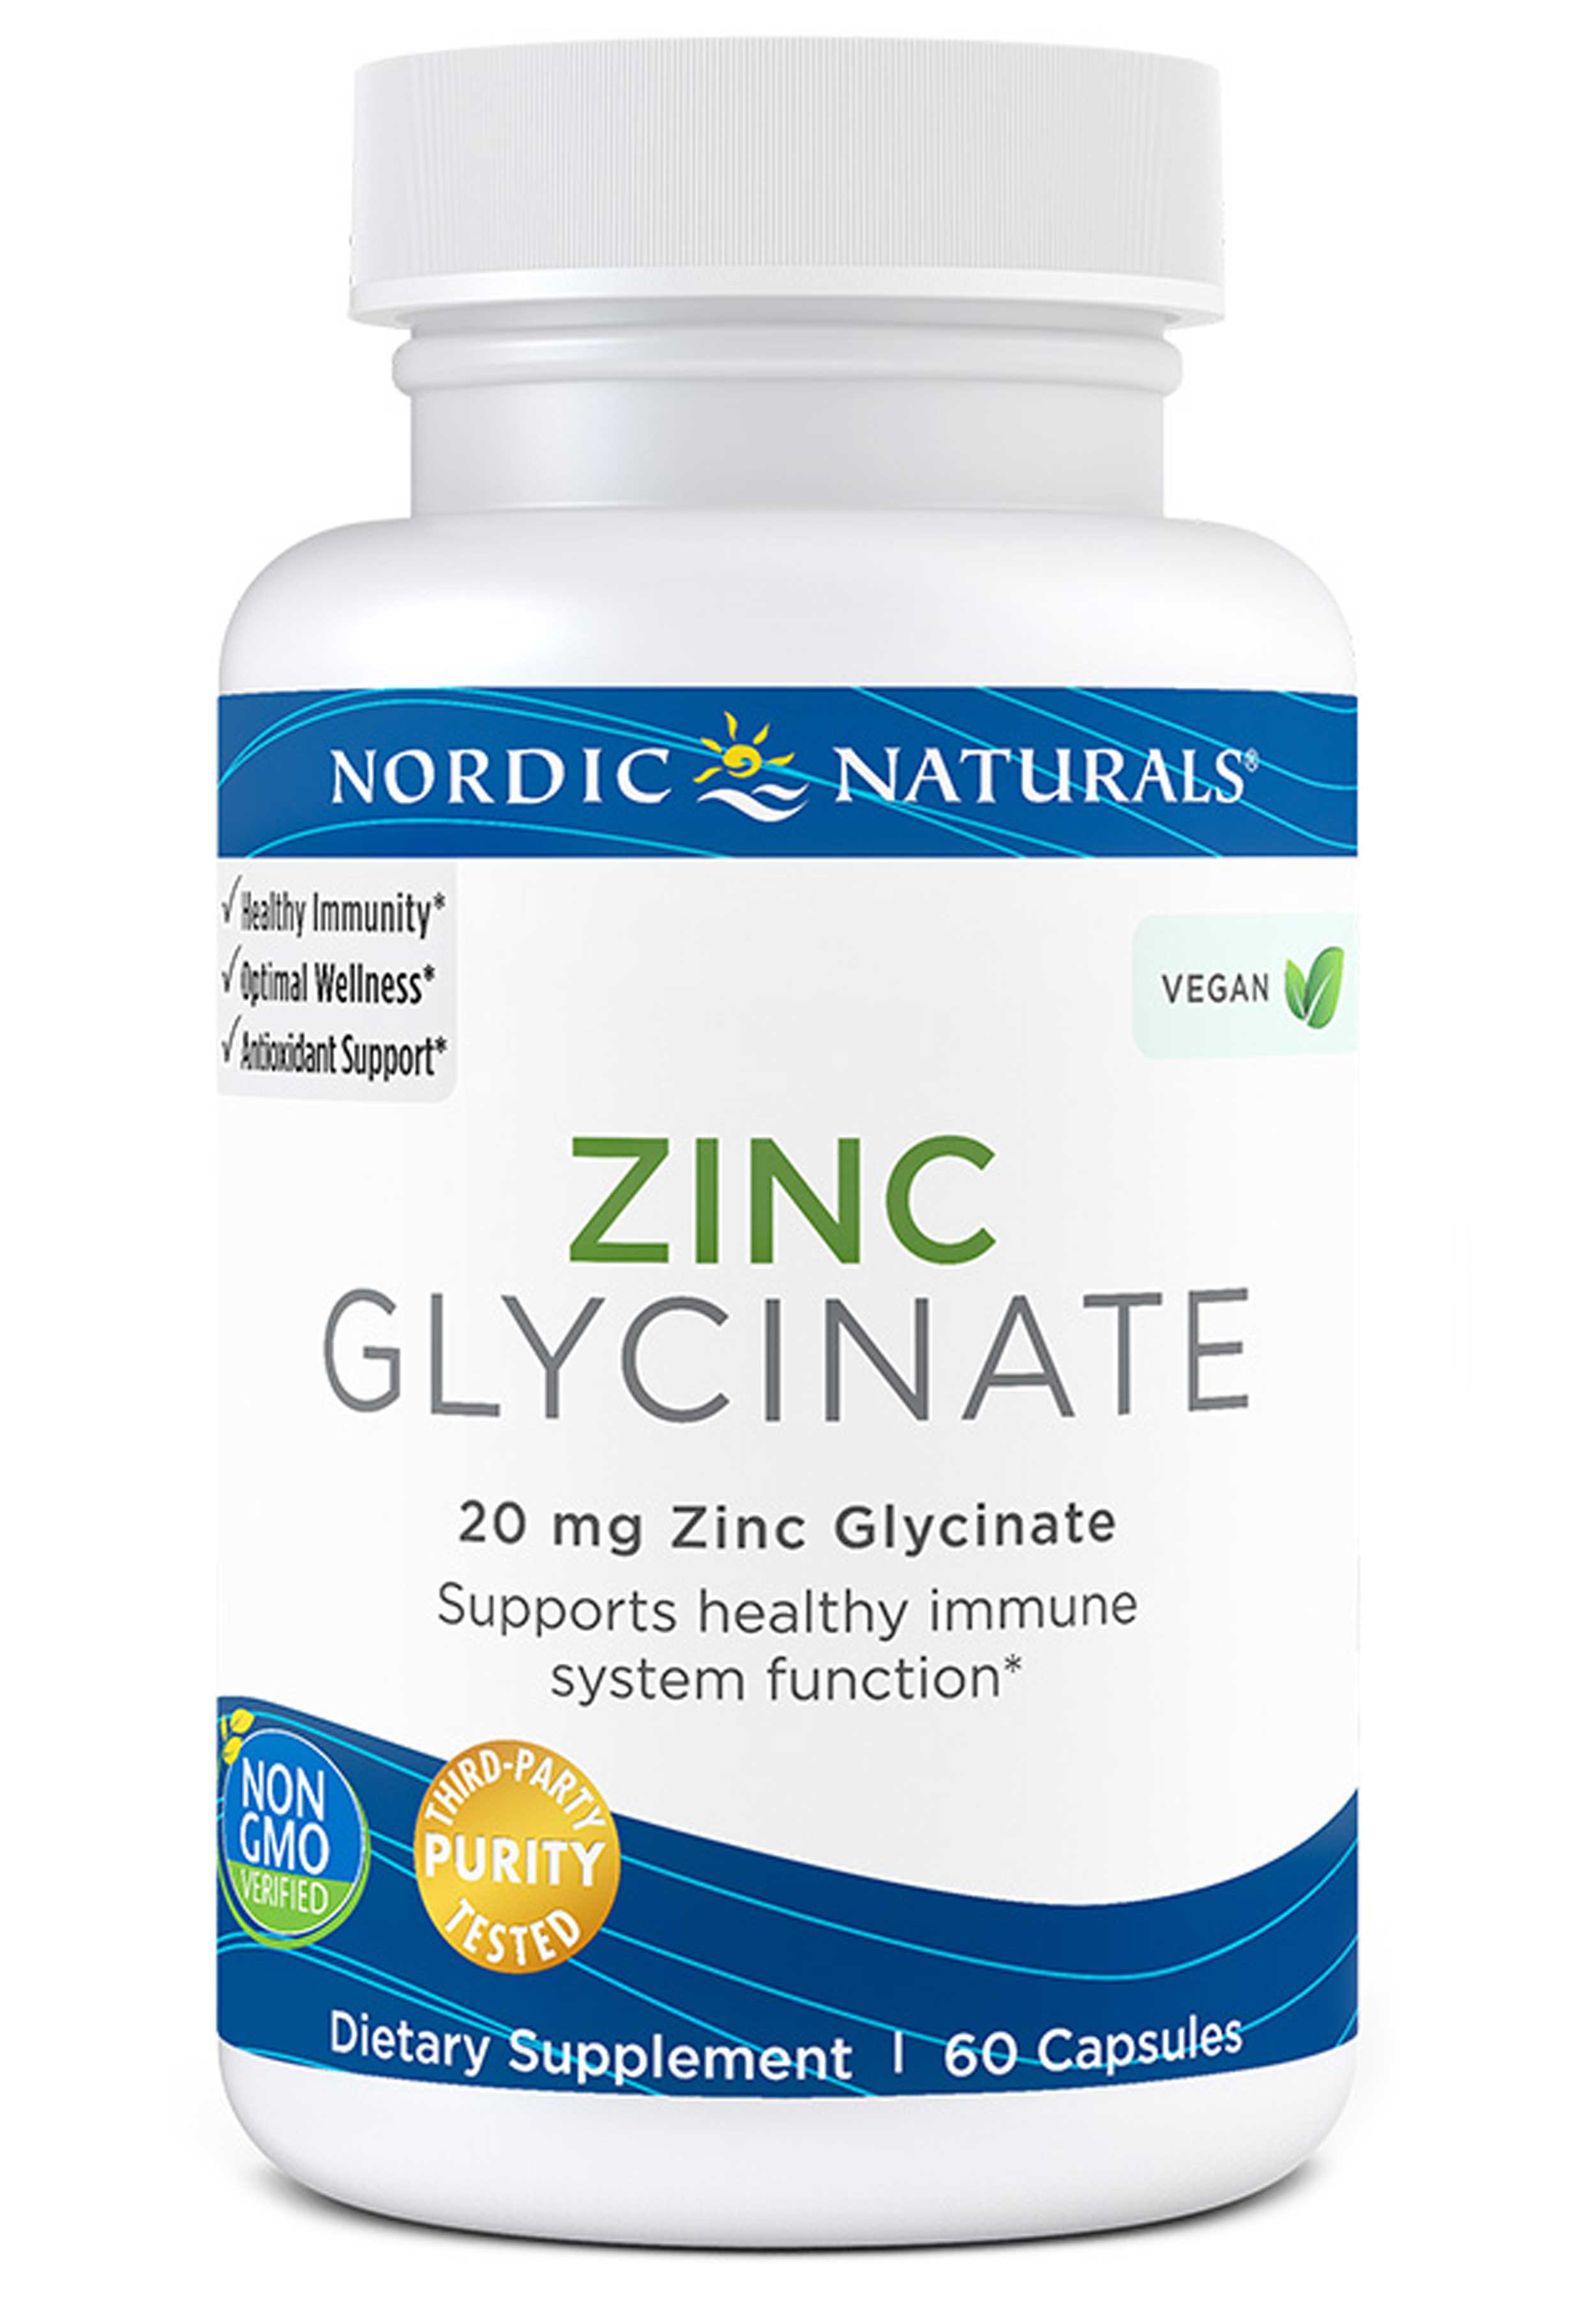 Nordic Naturals Zinc Glycinate